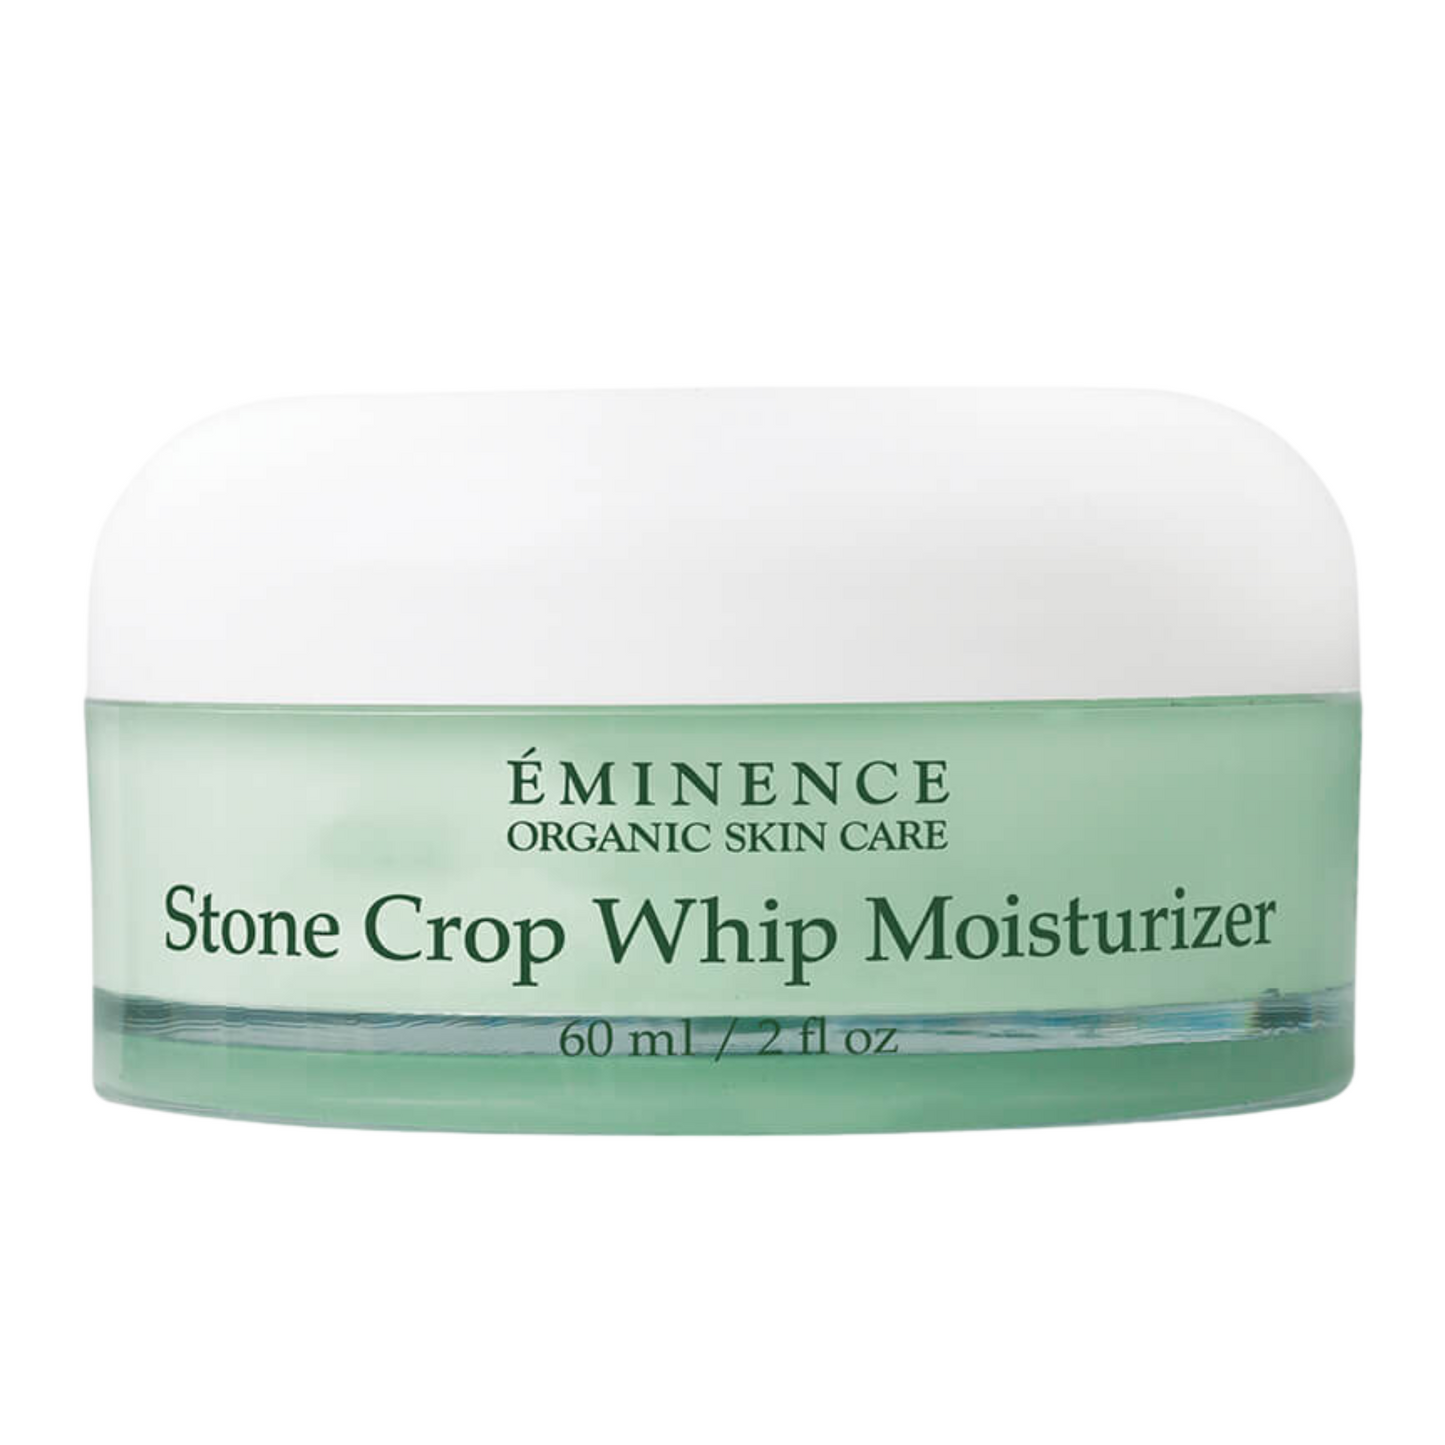 Stone Crop Whip Moisturizer - Eminence Organic Skin Care